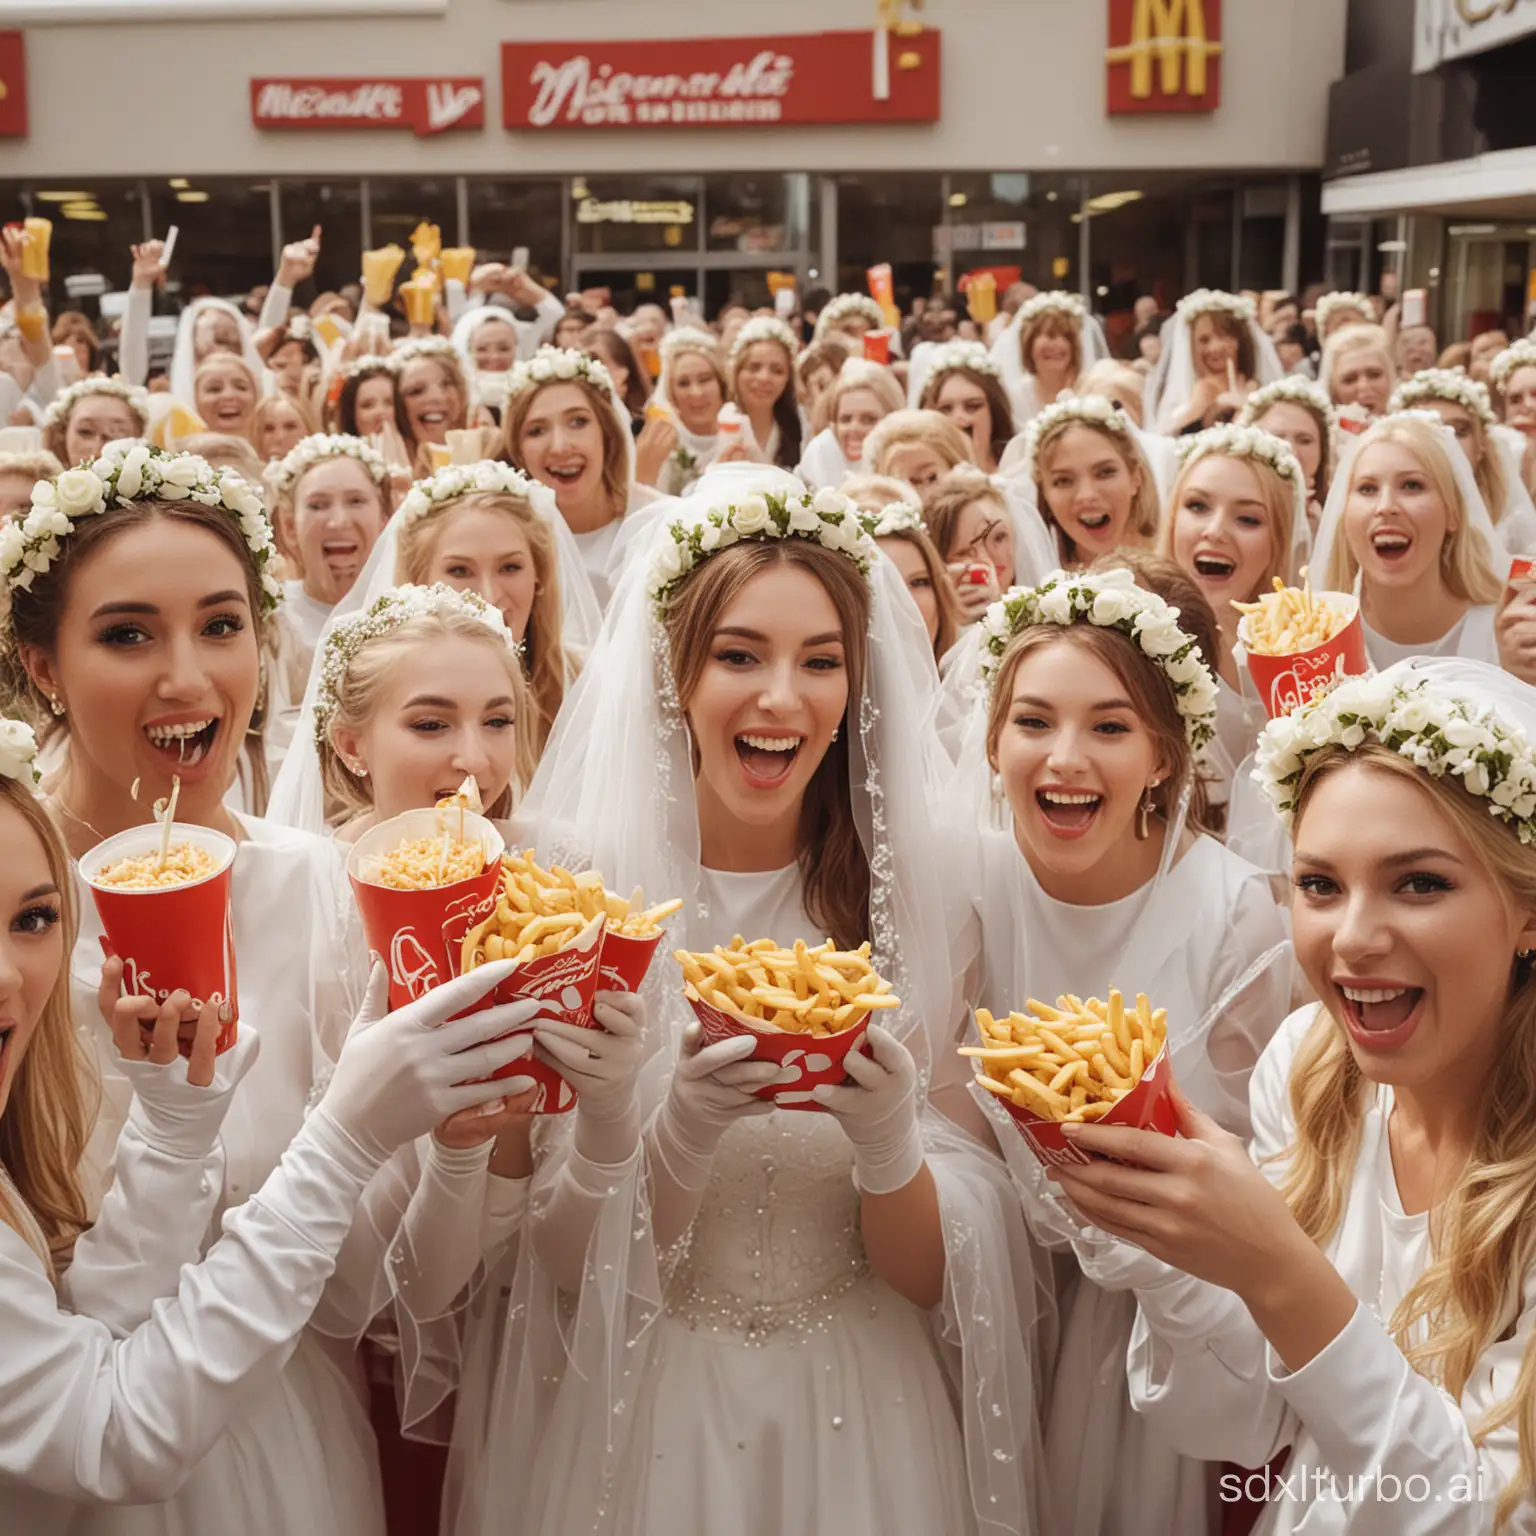 Brides-Enjoying-McDonalds-Meal-Together